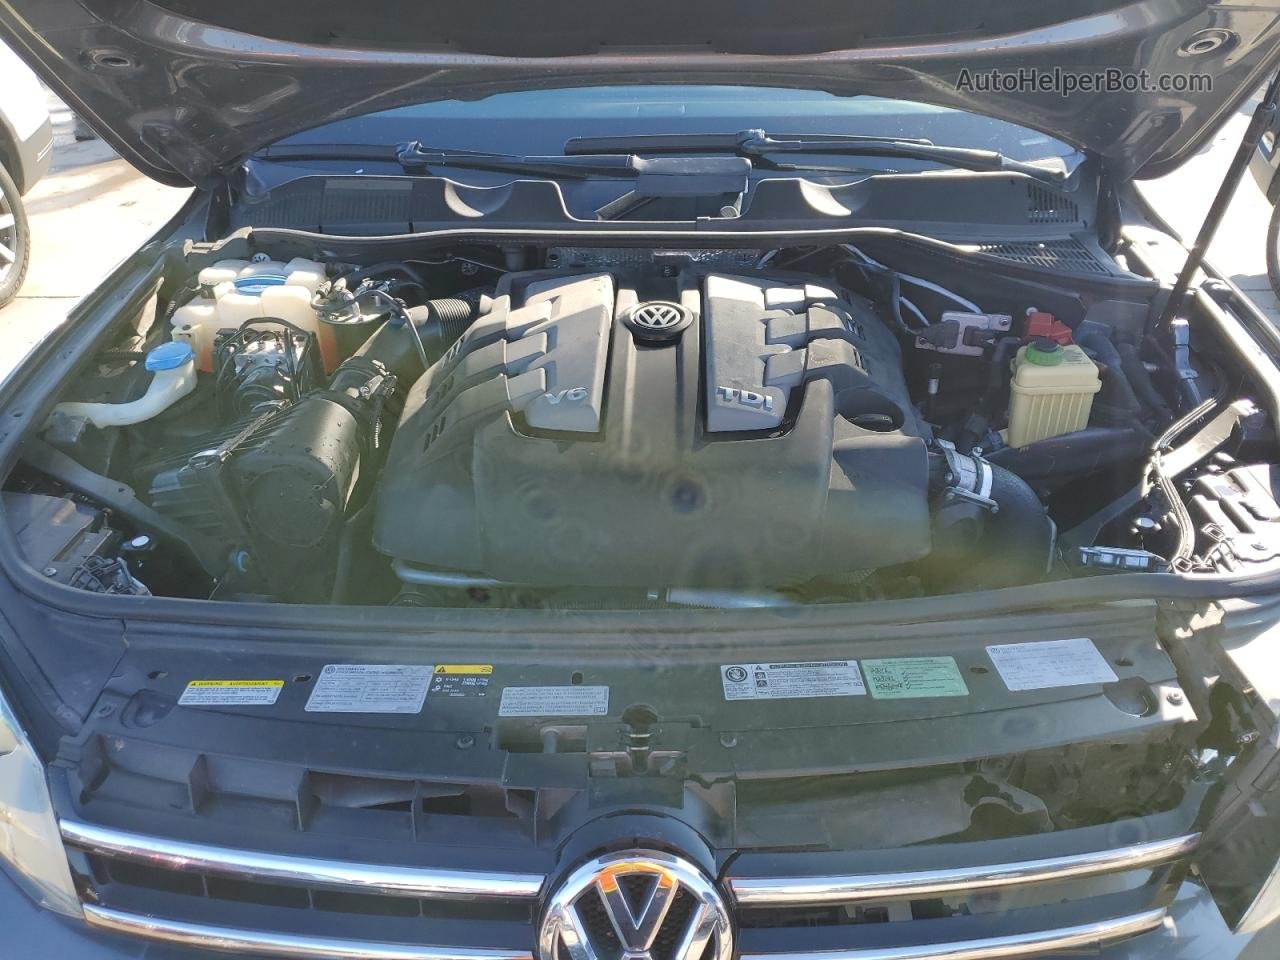 2014 Volkswagen Touareg V6 Tdi Gray vin: WVGEP9BP0ED005825